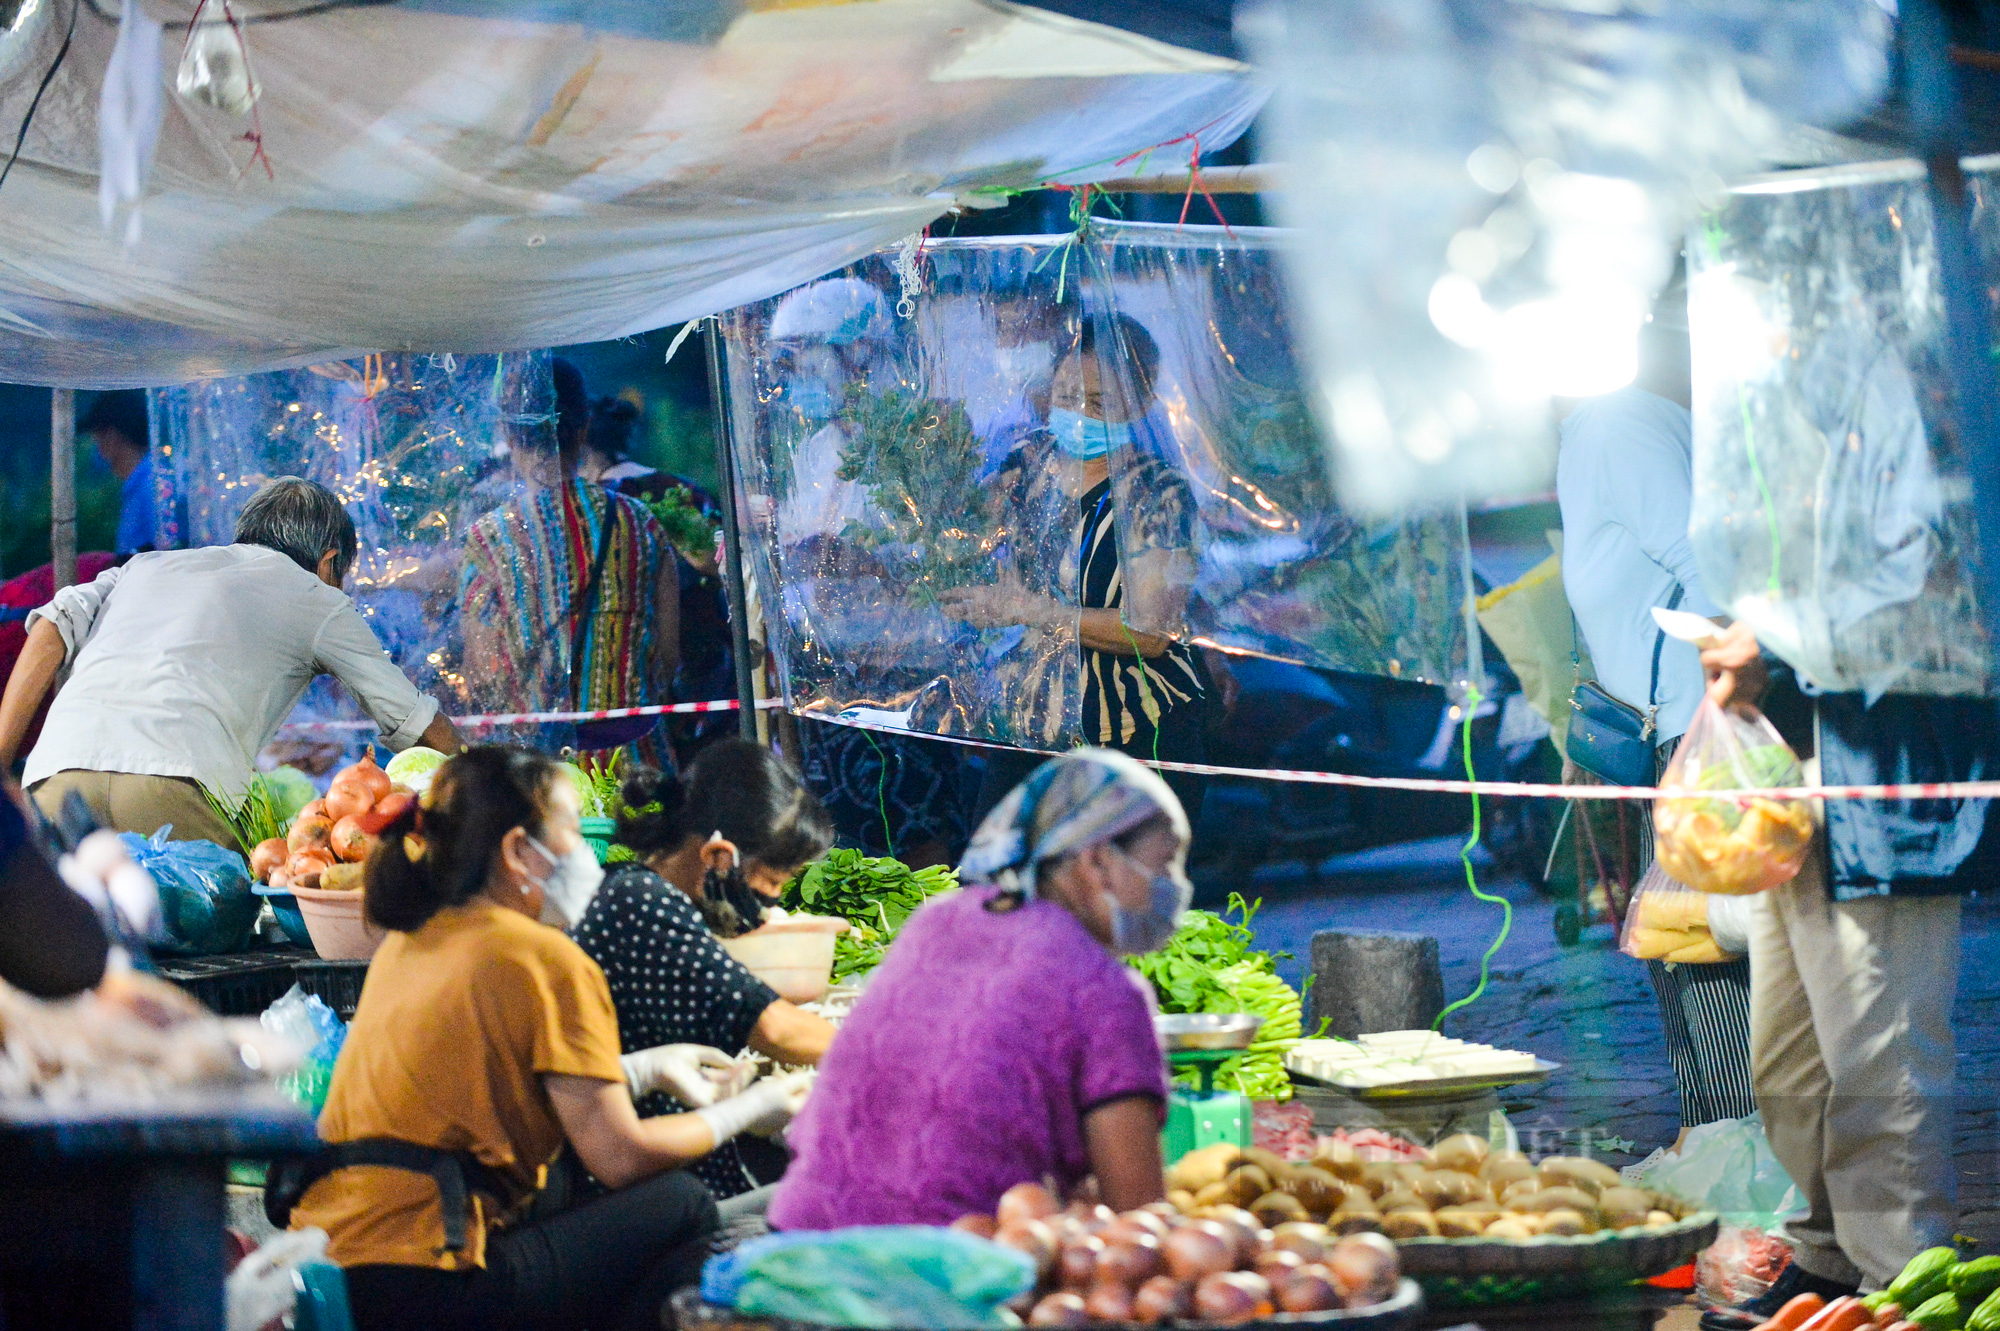 Chợ dân sinh ở Hà Nội đông đúc ngày đầu nới lỏng giãn cách - Ảnh 12.